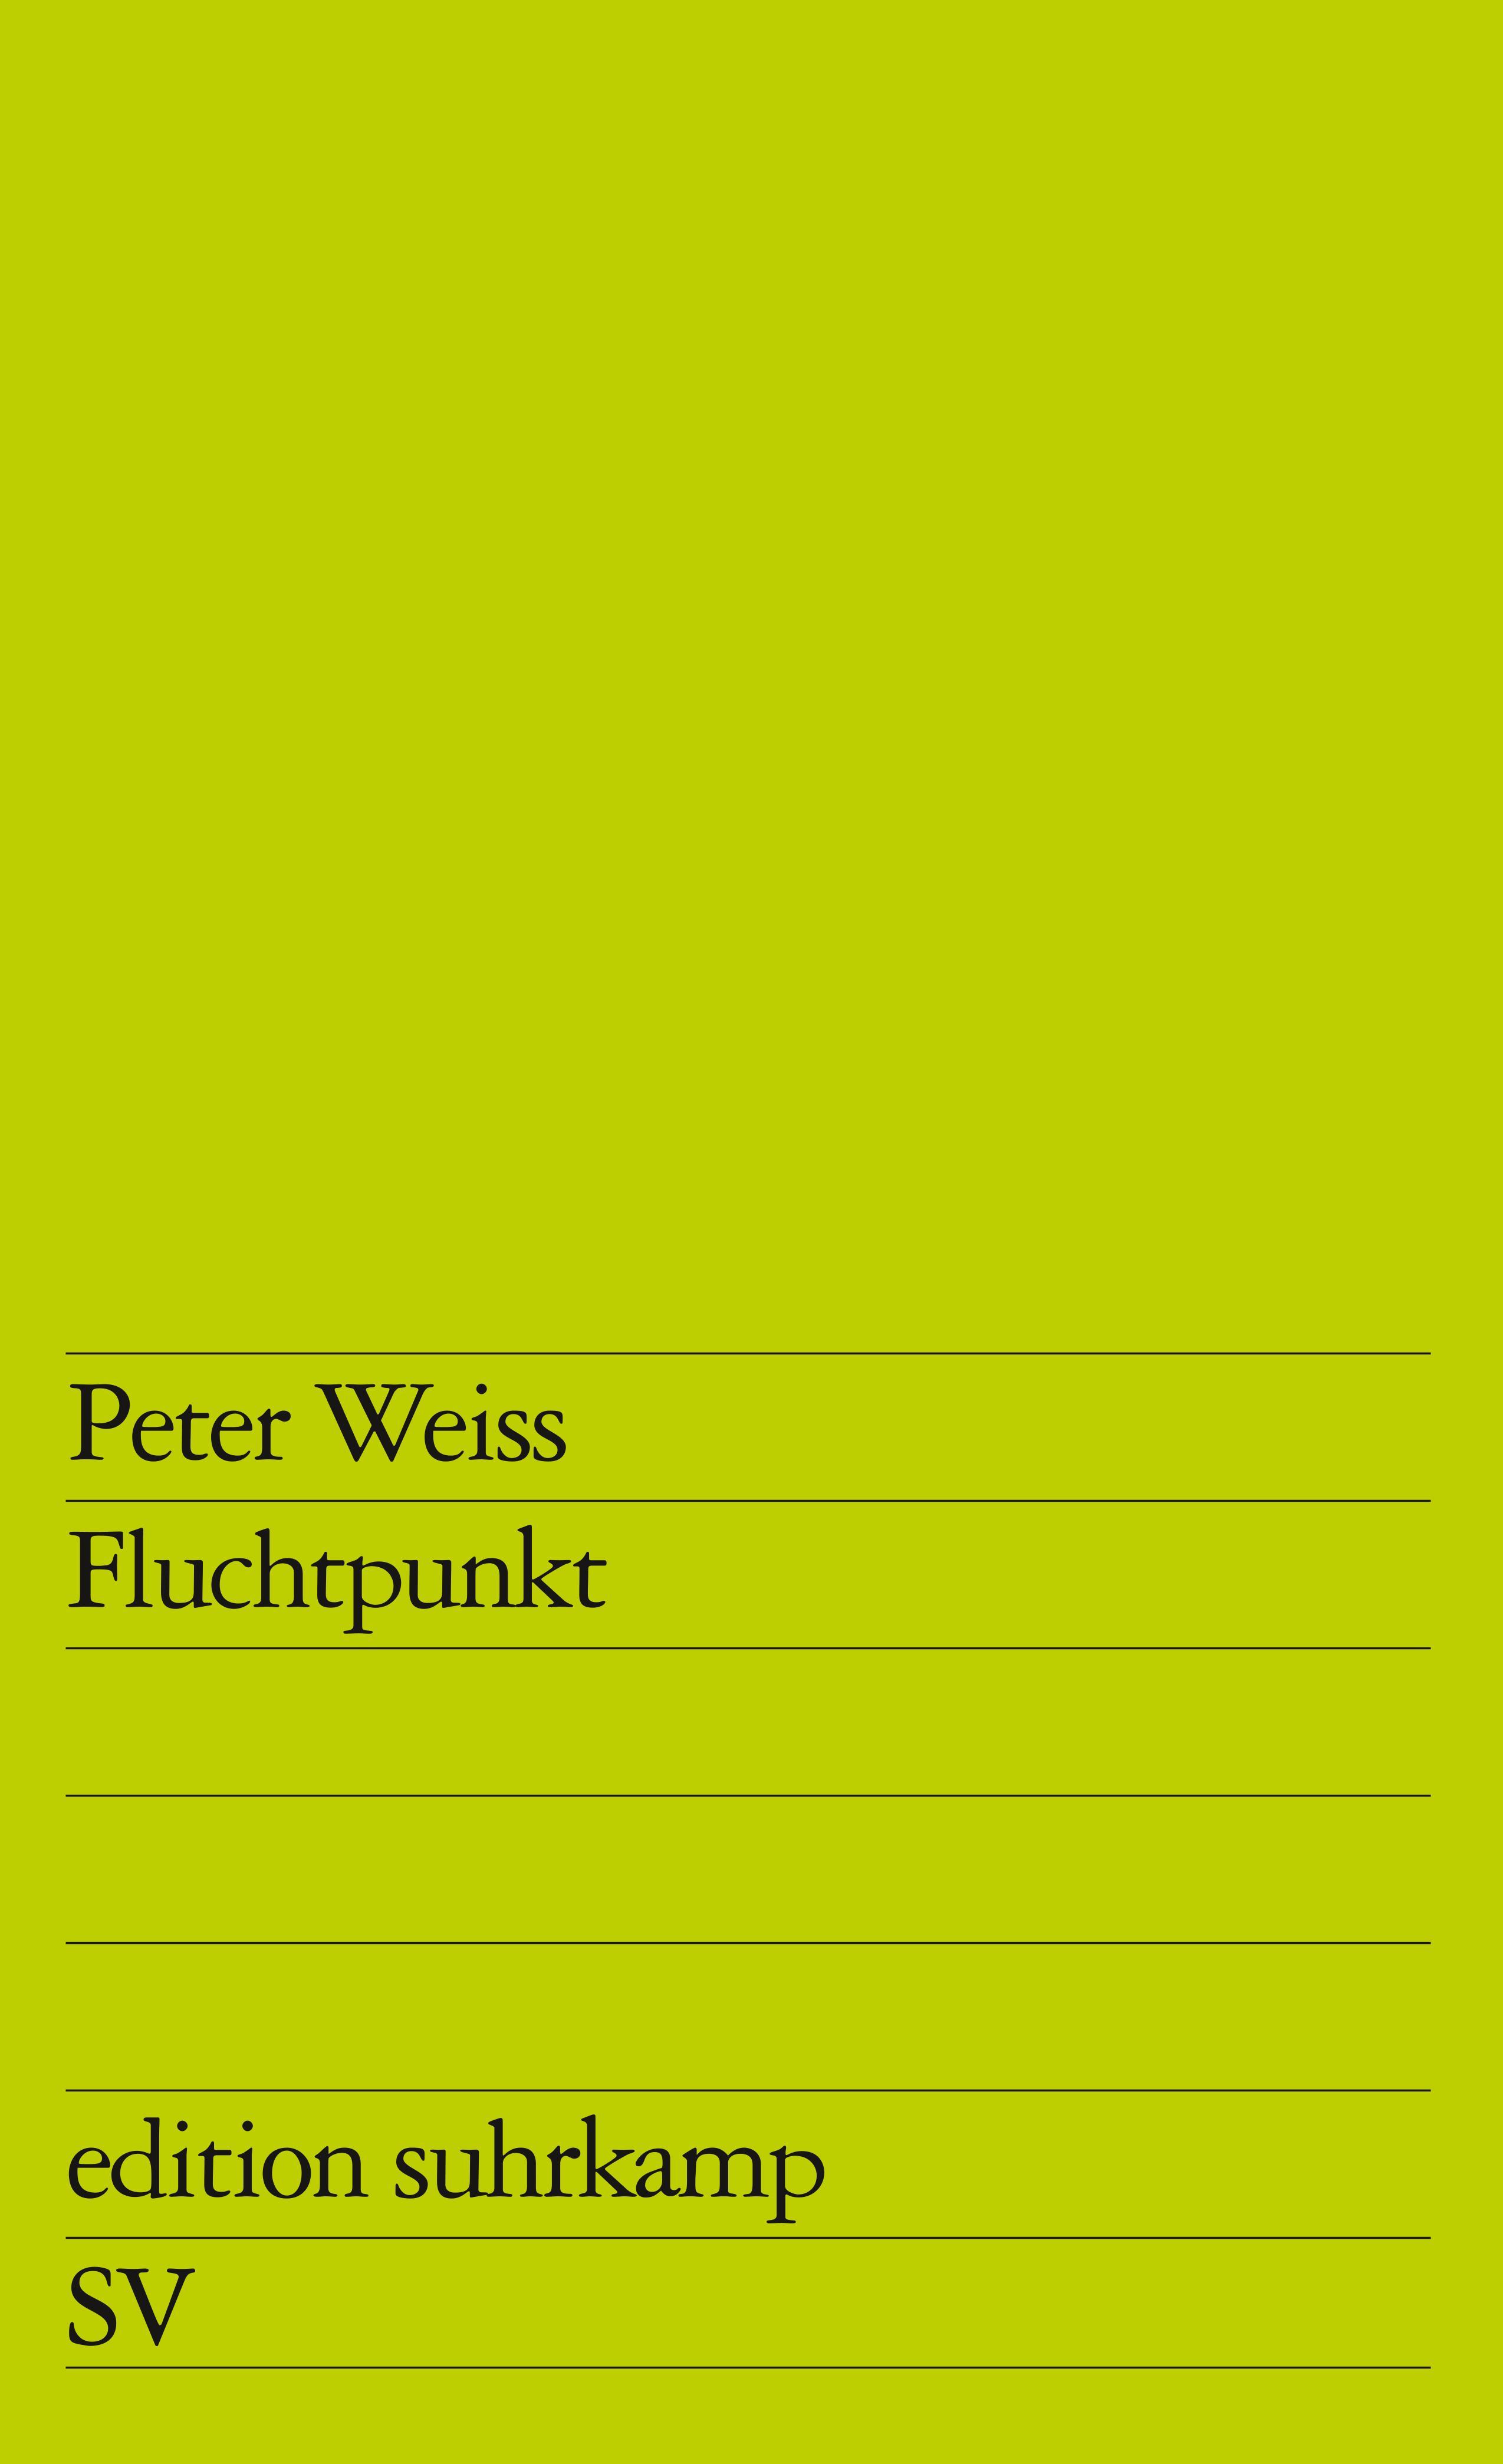 Fluchtpunkt - Weiss, Peter